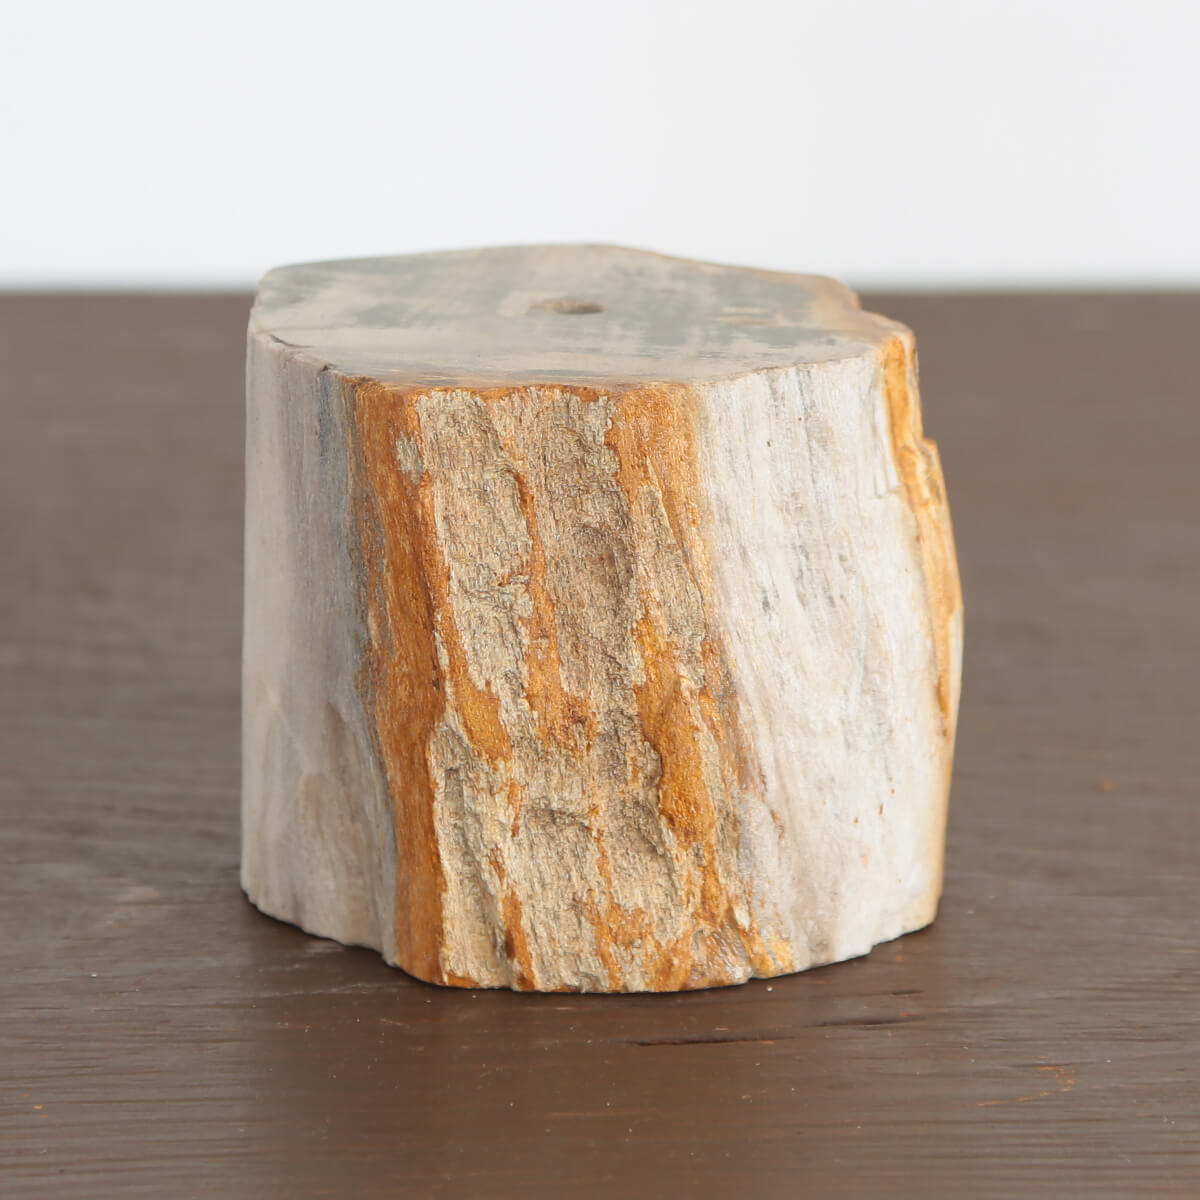 【珪化木】木の化石で出来た一輪挿し用フラワーベース《丸太》